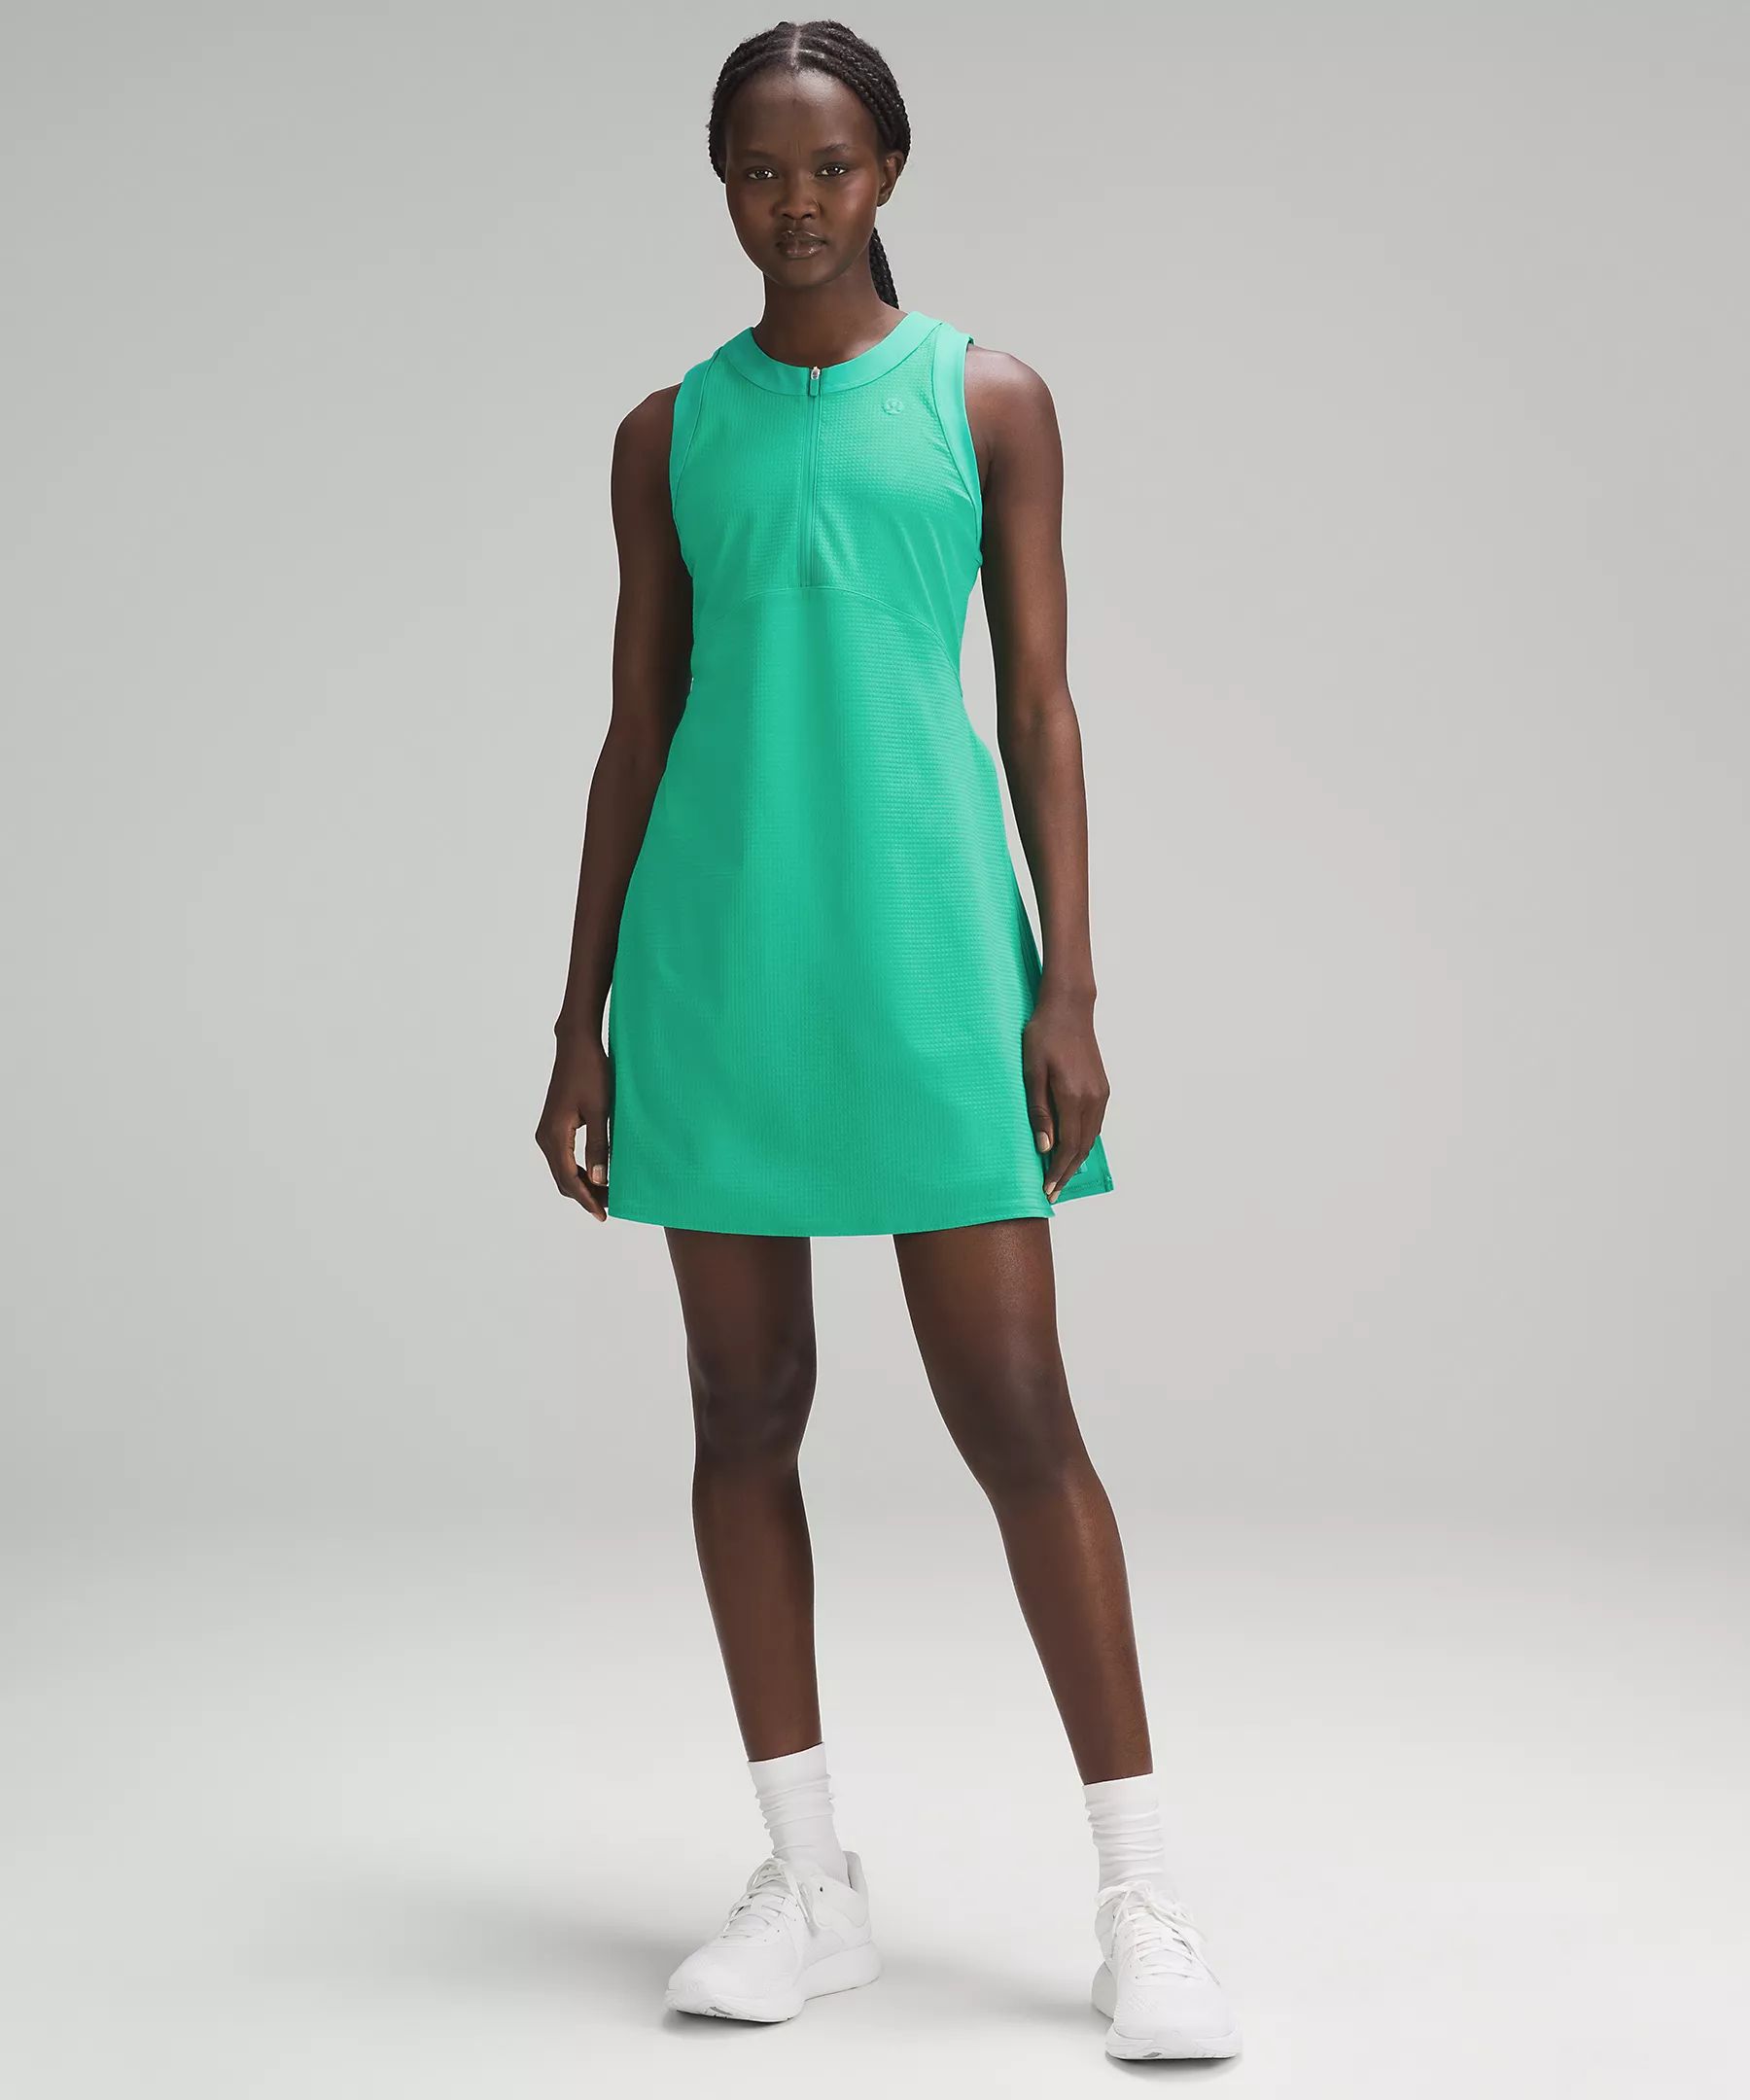 Grid-Texture Sleeveless Tennis Dress | Lululemon (US)